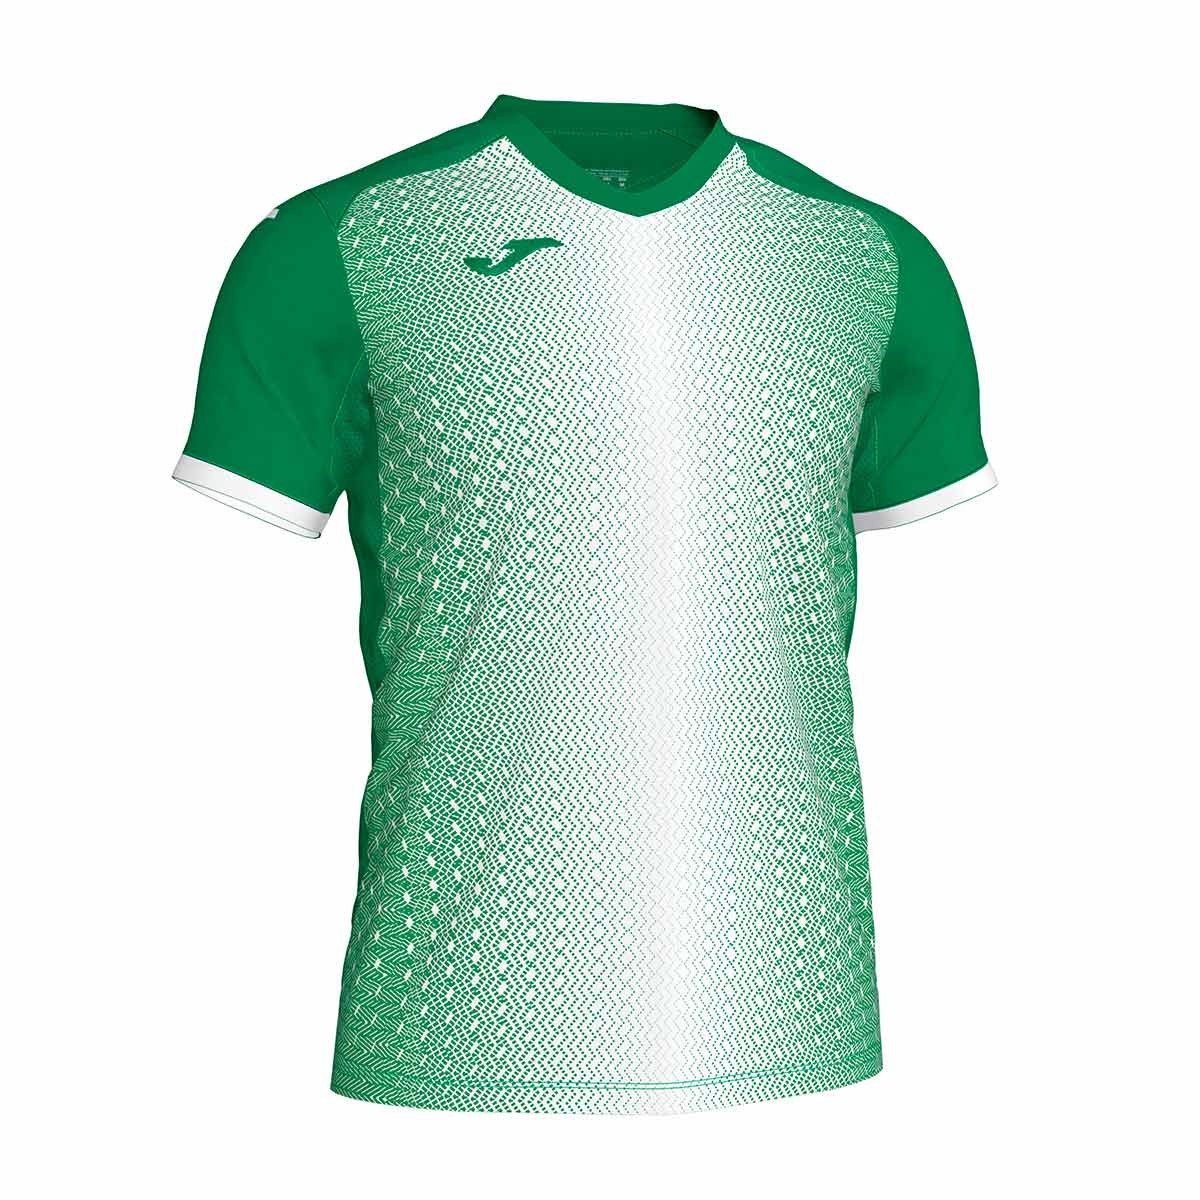 Camiseta Joma Supernova m/c Verde-Blanco - Tienda de fútbol Fútbol Emotion